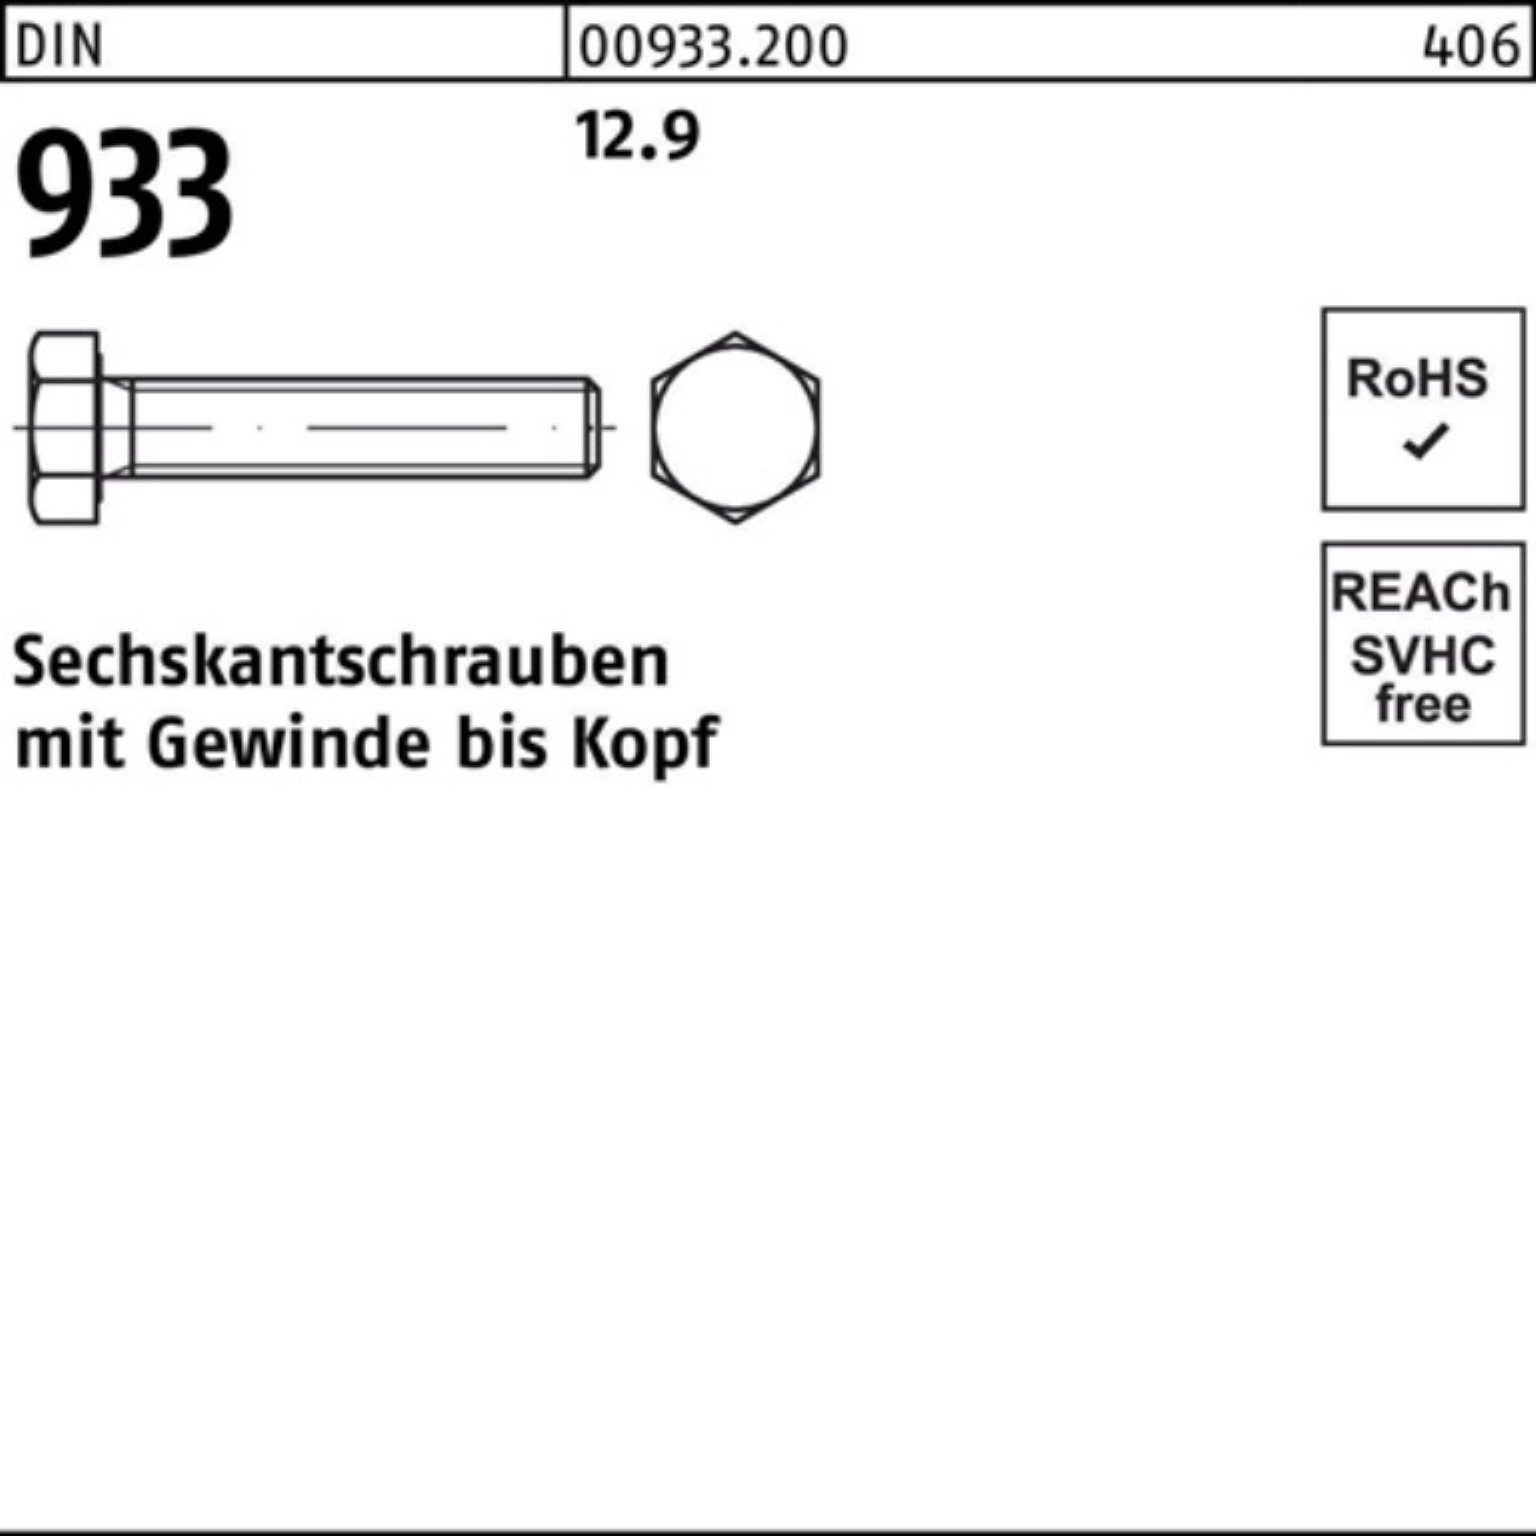 Reyher Sechskantschraube 200er Pack VG DIN 200 M8x DIN 933 Stück 25 12.9 933 Sechskantschraube